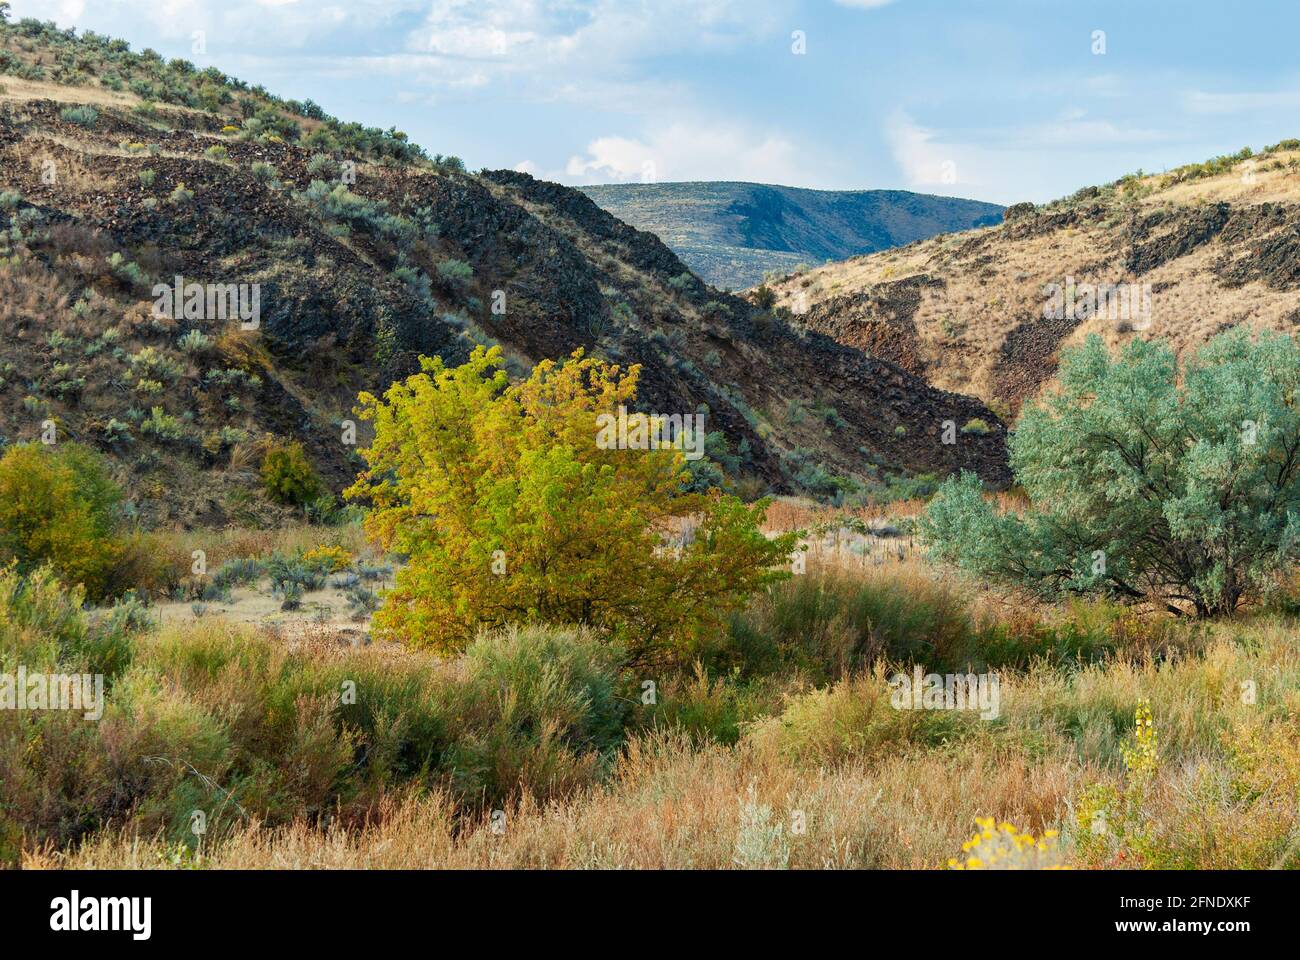 Colinas ondulantes del desierto alto de Oregón con sagebrush, Artemisia tridentata. EE.UU. Foto de stock